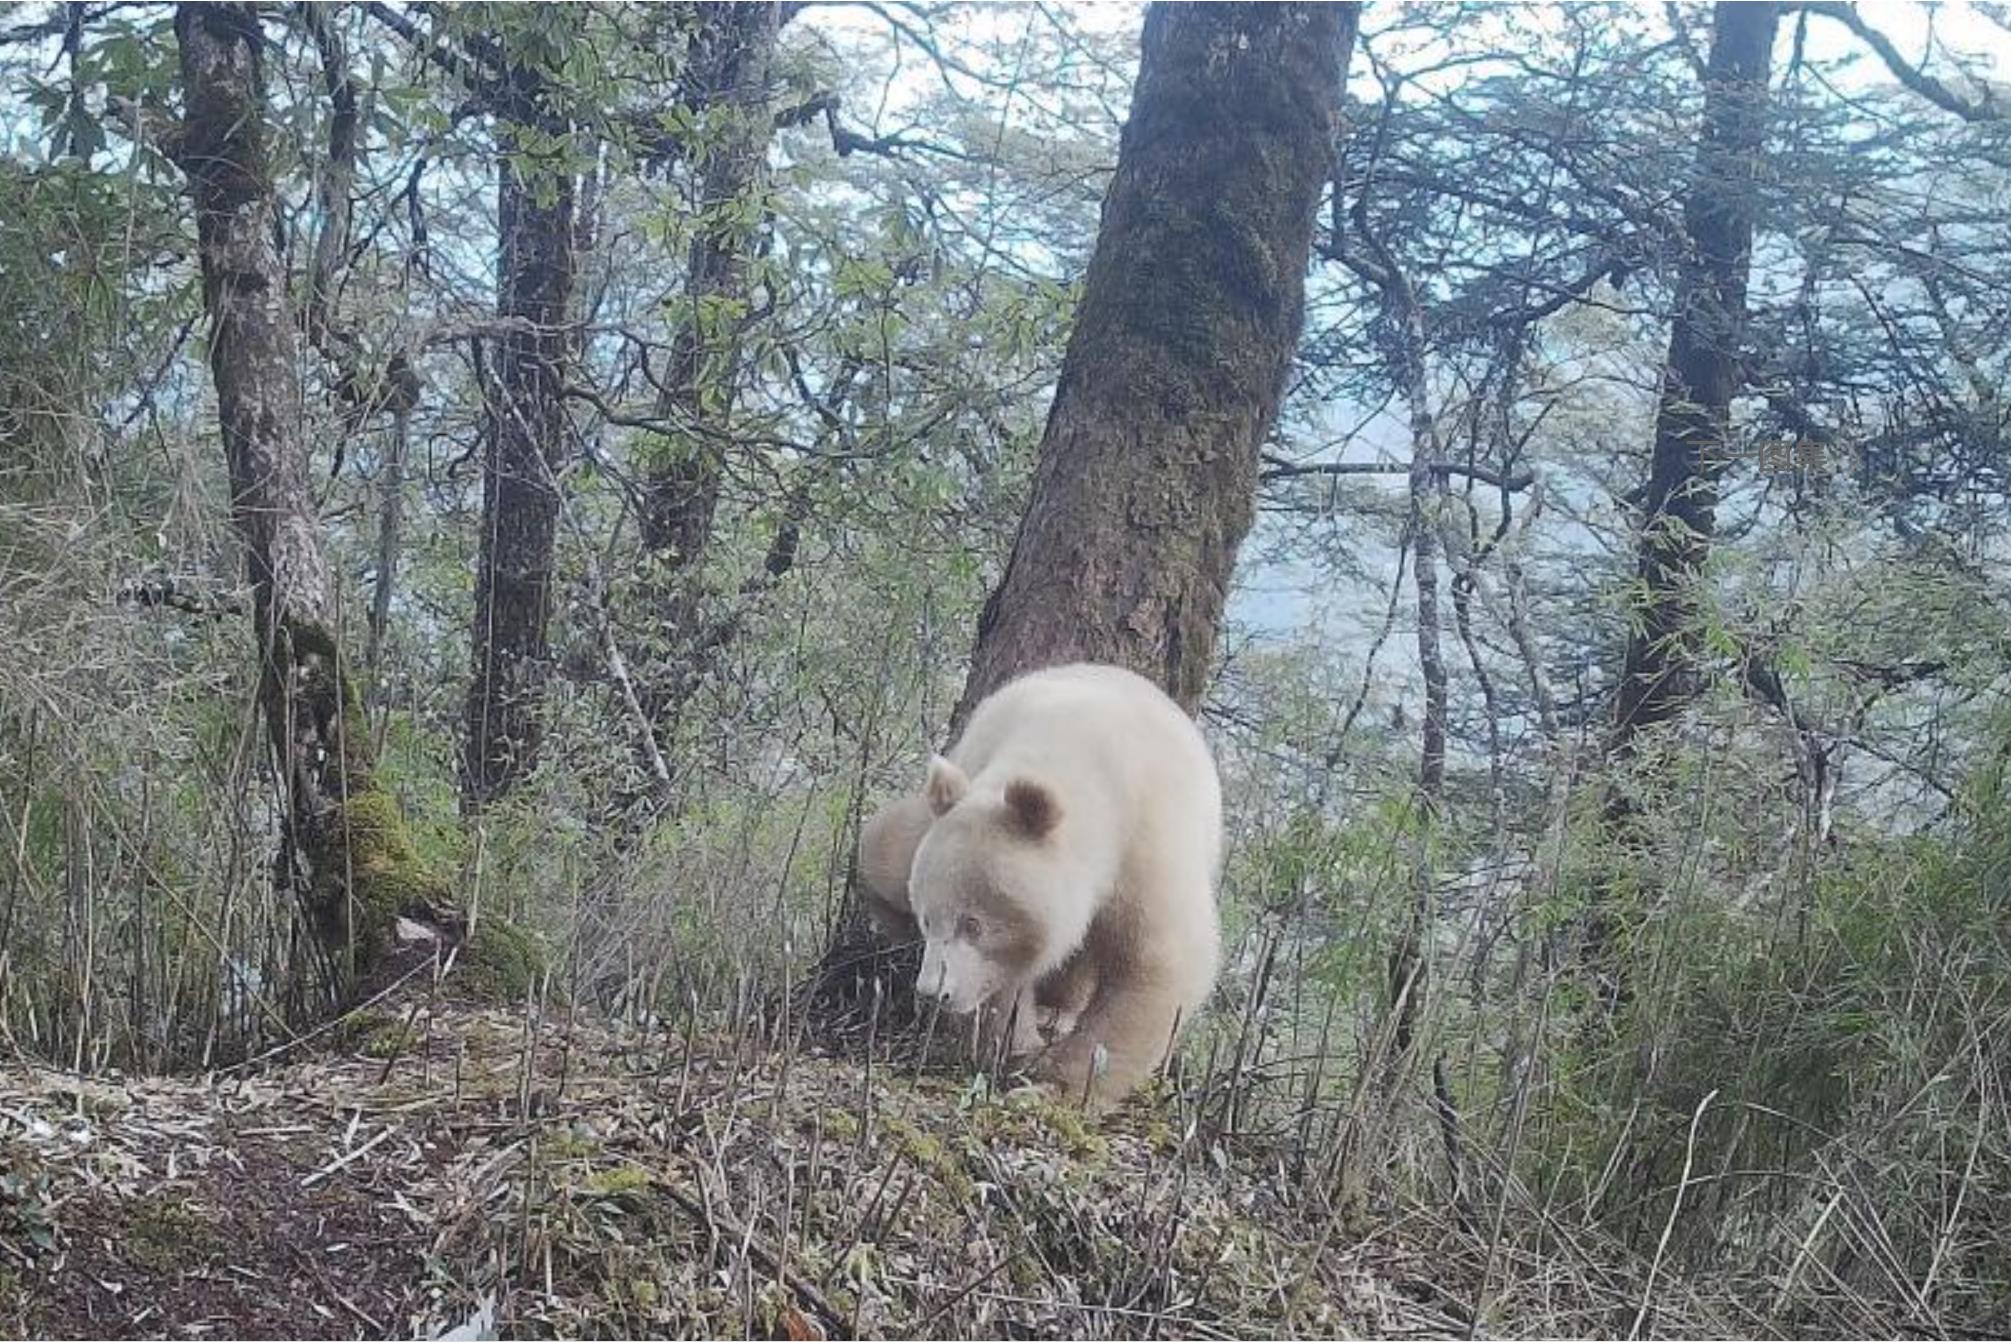 大陆四川卧龙国家级自然保护区管理局近日首度公布全球唯一的白色猫熊正面照。（取自中新网）